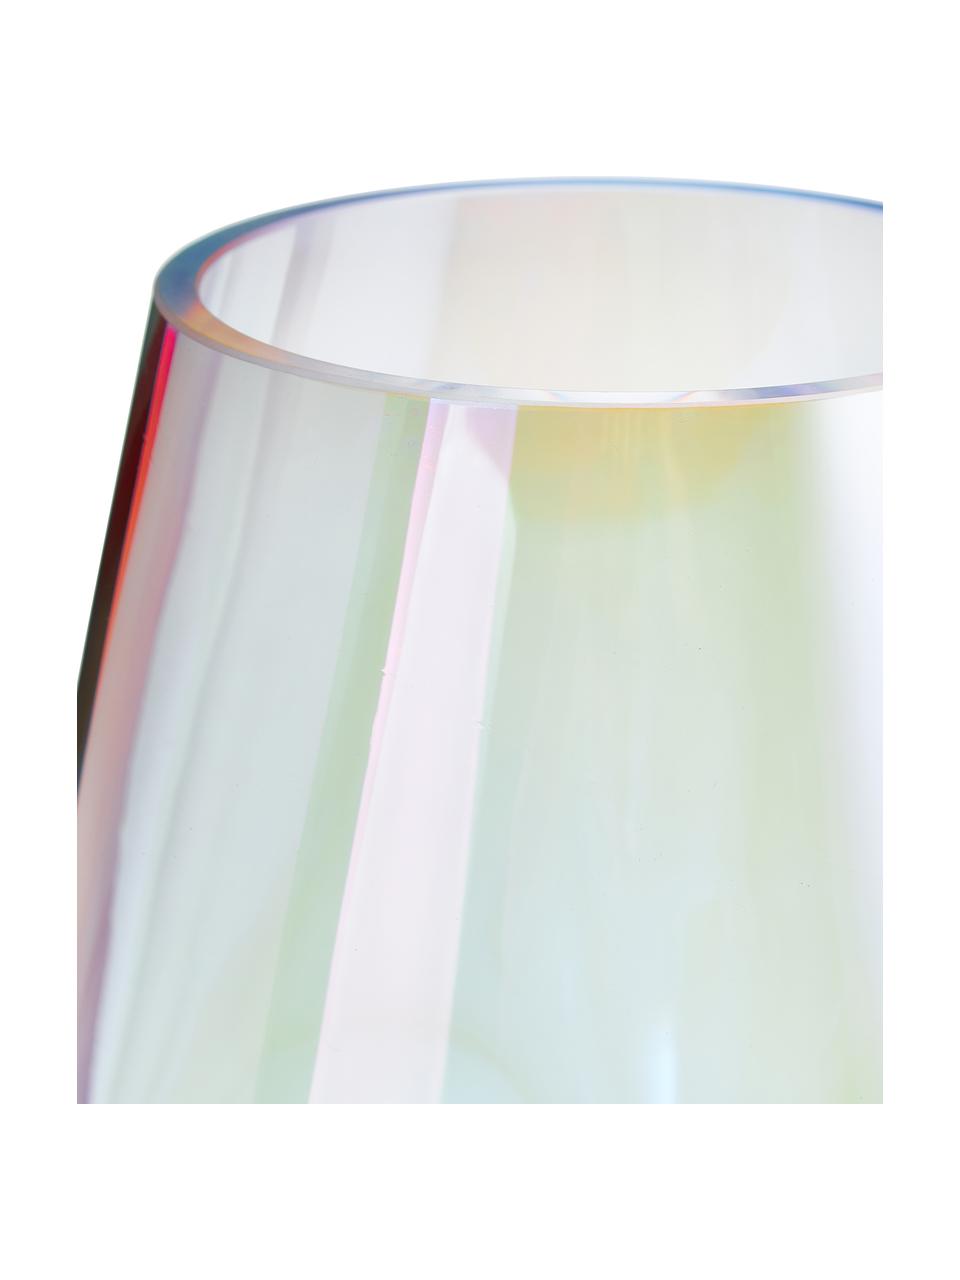 Grand vase irisé verre soufflé bouche Rainbow, Verre, soufflé bouche, Transparent, irisé, Ø 20 x haut. 35 cm